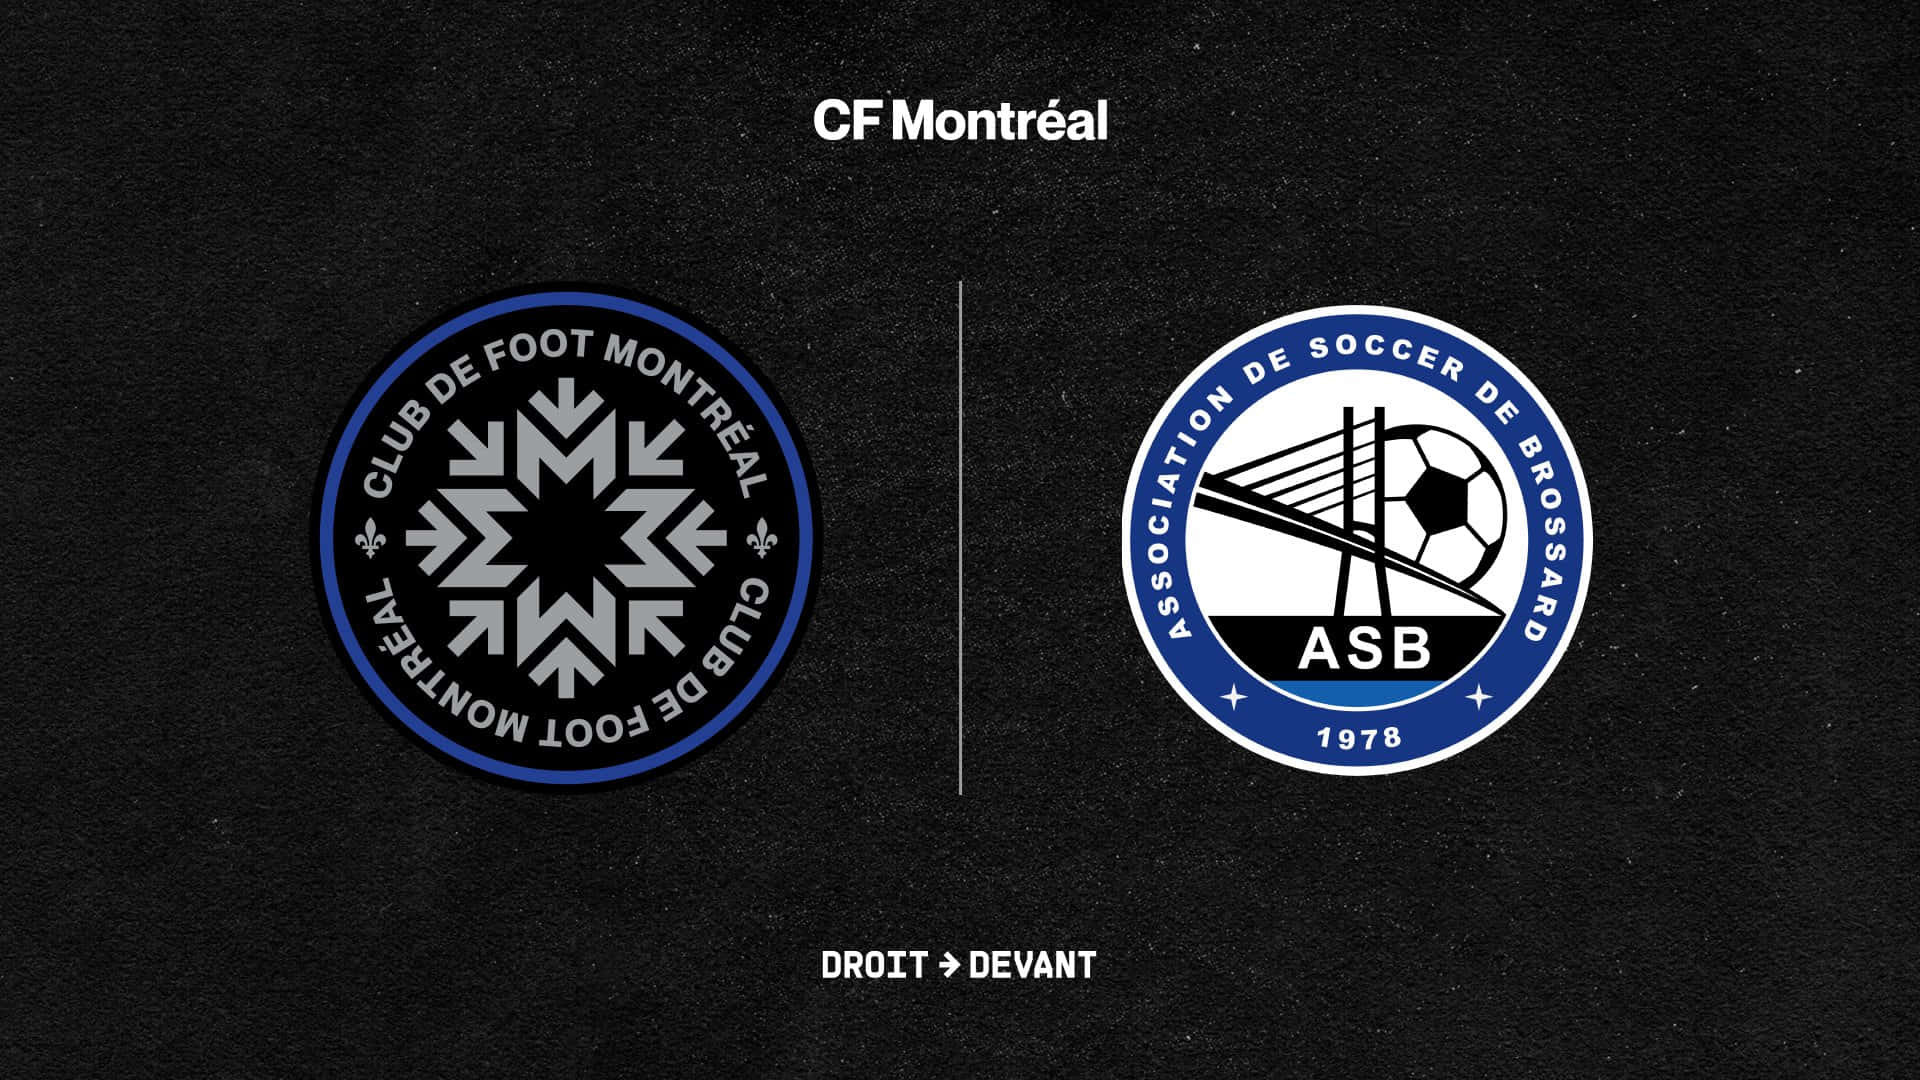 Diebrossard Soccer Association Und Cf Montréal. Wallpaper